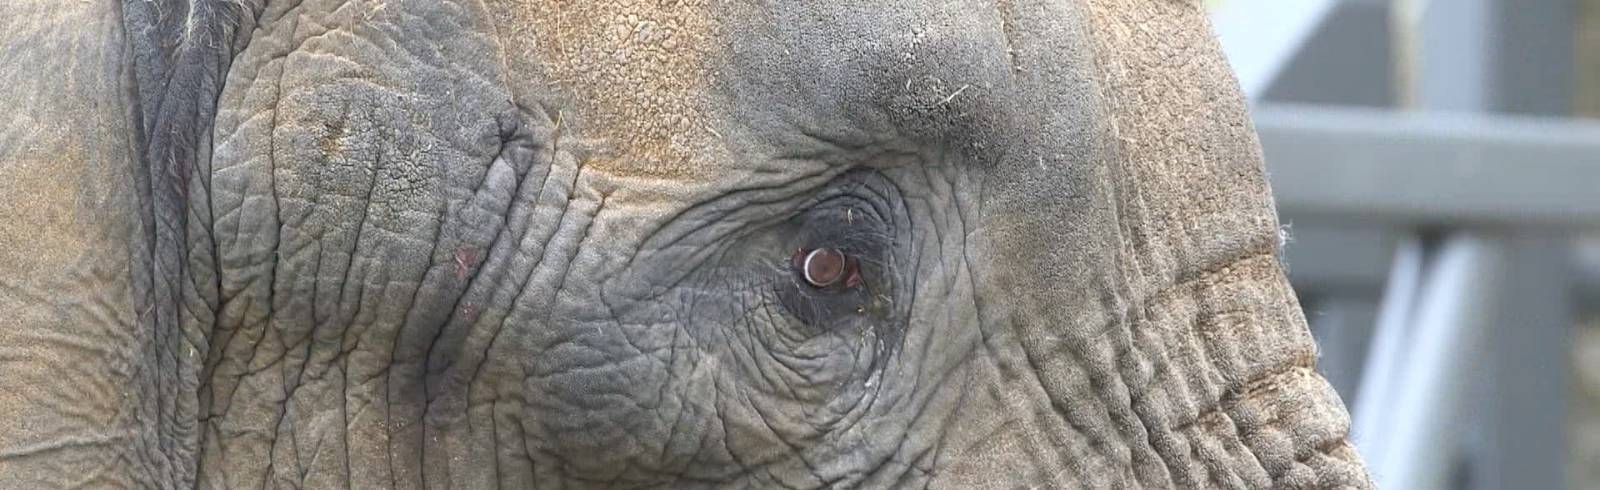 Elefantenbulle "Tembo" zieht in Schönbrunn ein